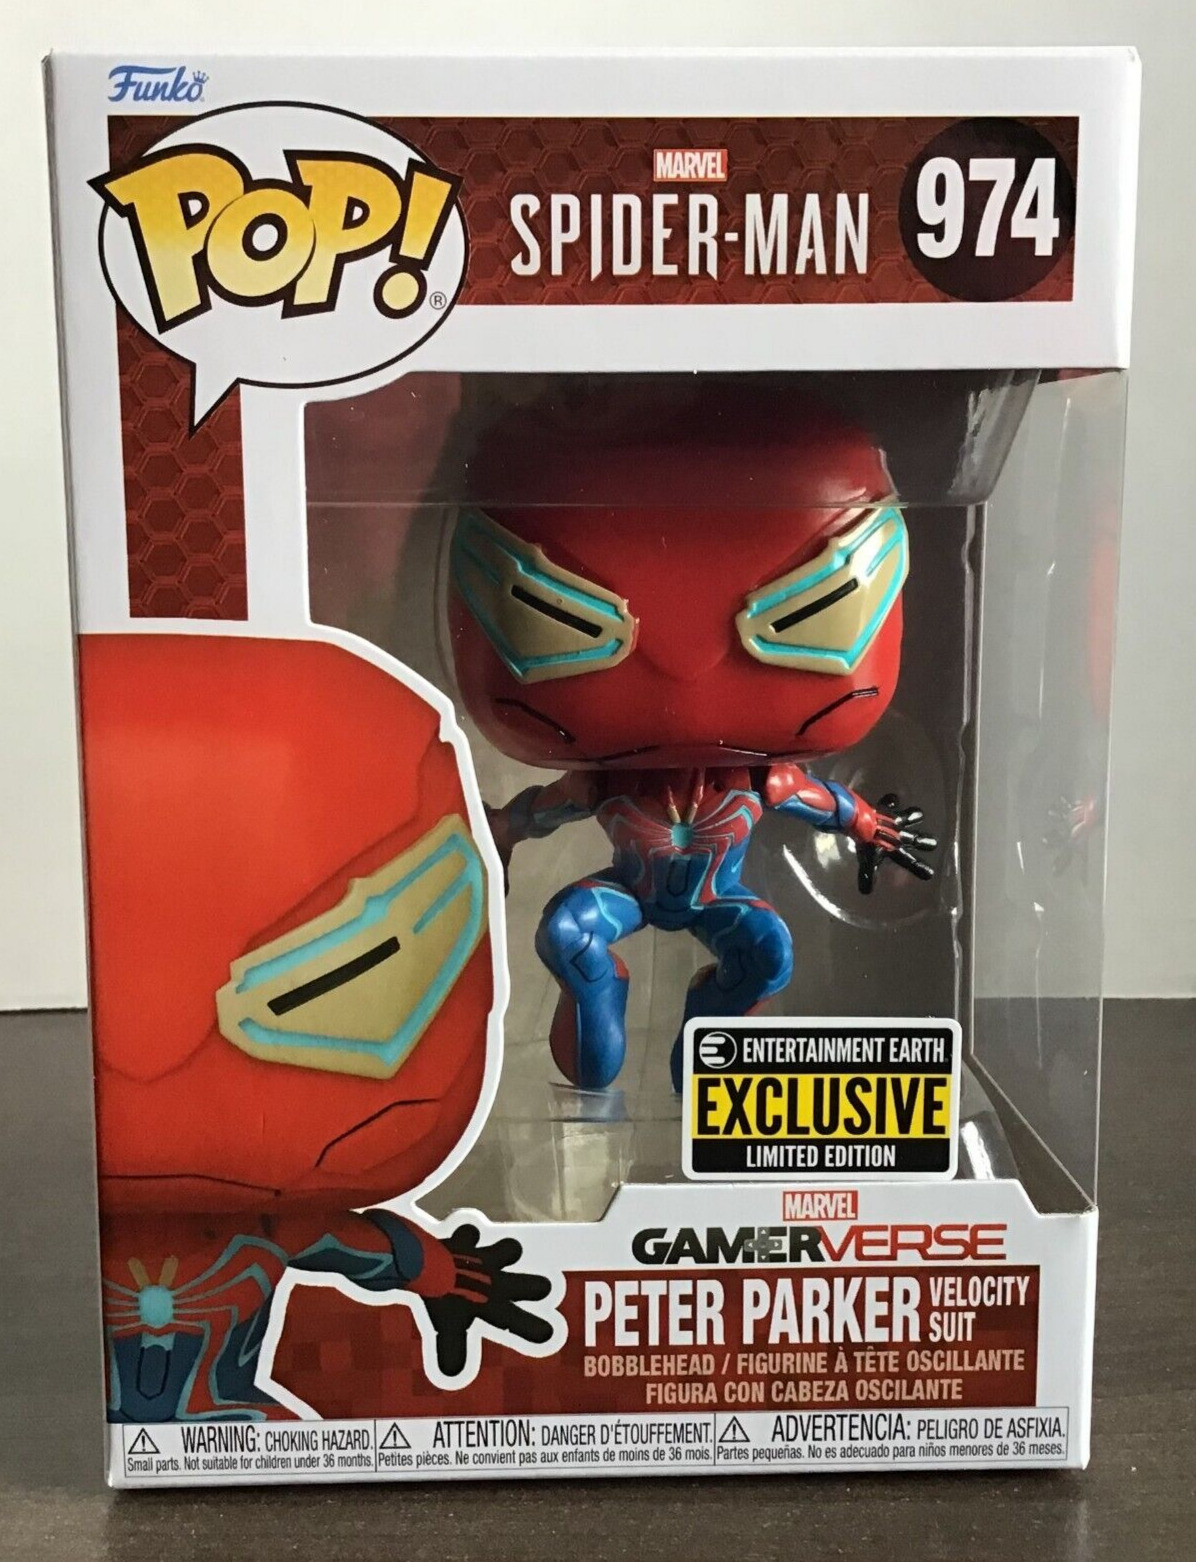 Funko Pop Spider-Man 2 Peter Parker Velocity Suit Funko Pop #974 EE Exclusive